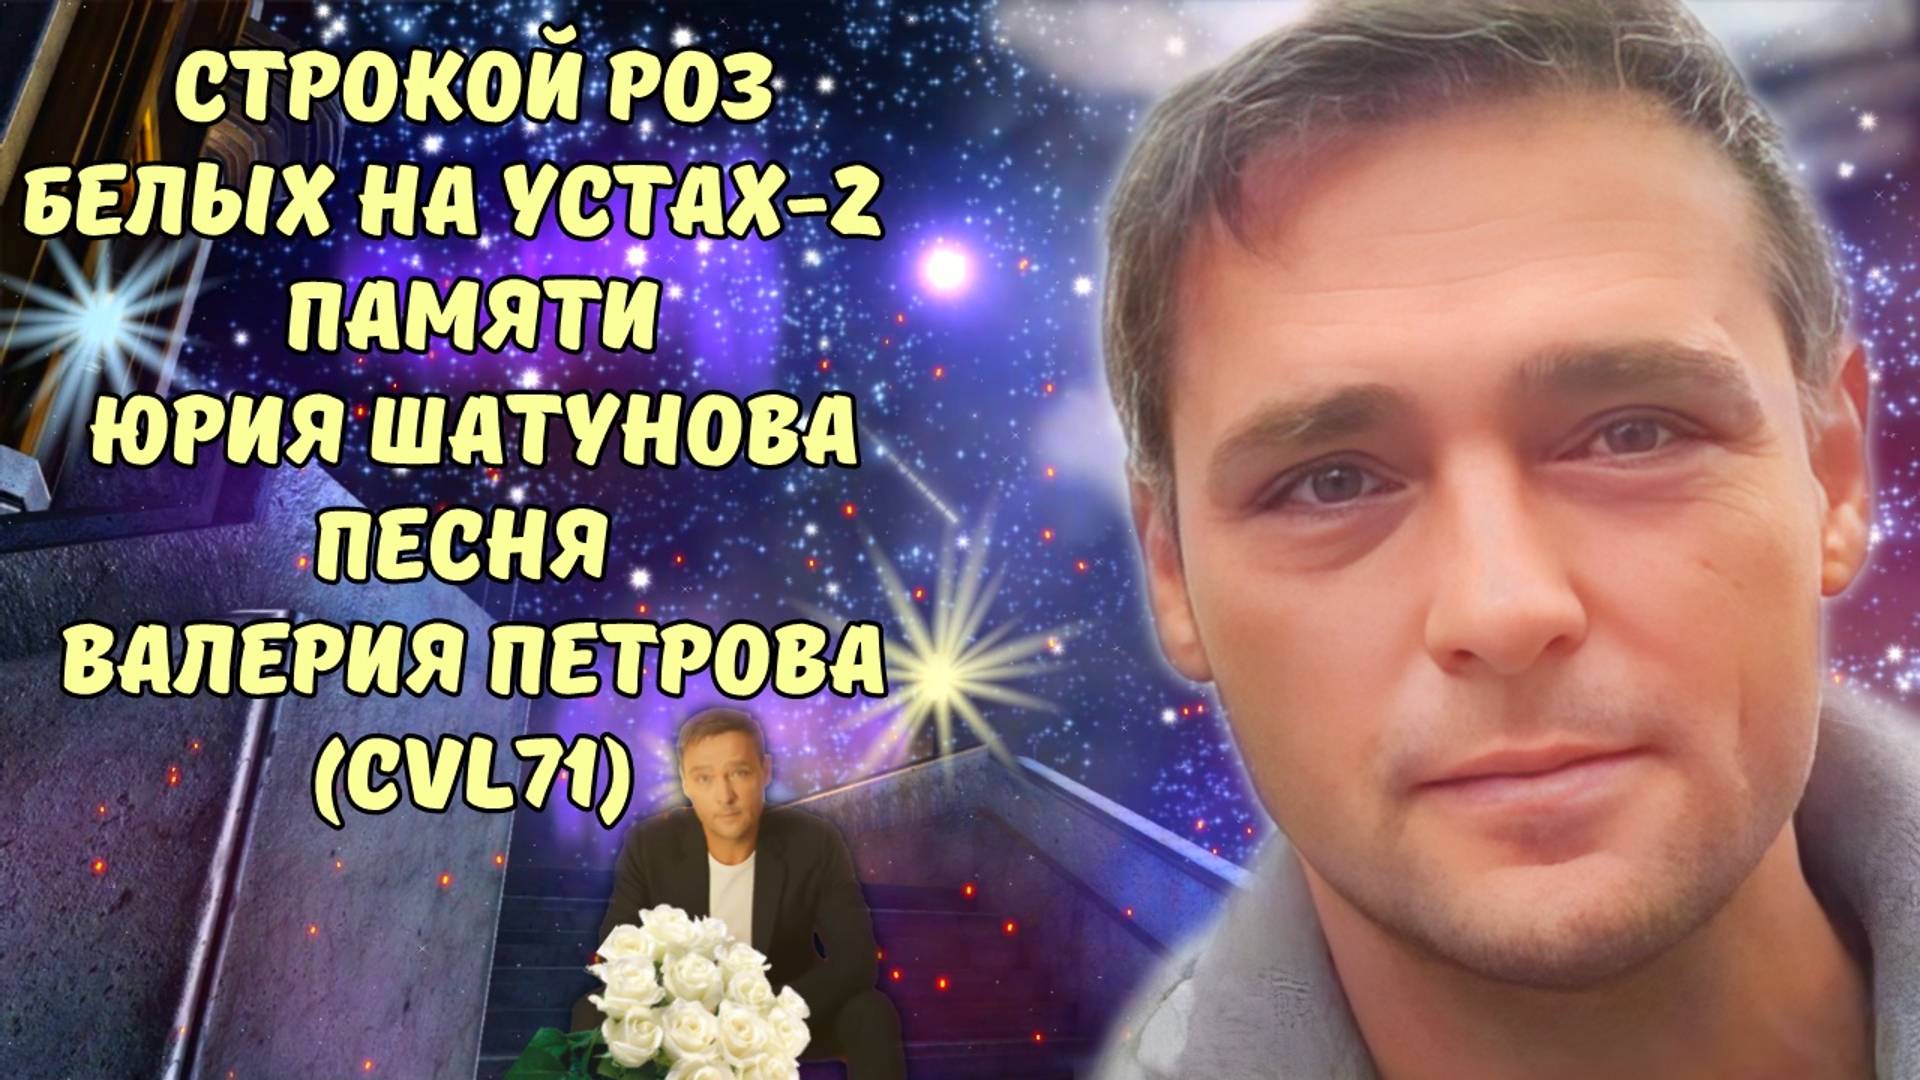 "Строкой роз белых на устах - 2" - Валерий Петров (CVL71) Посвящается памяти Юрия Шатунова